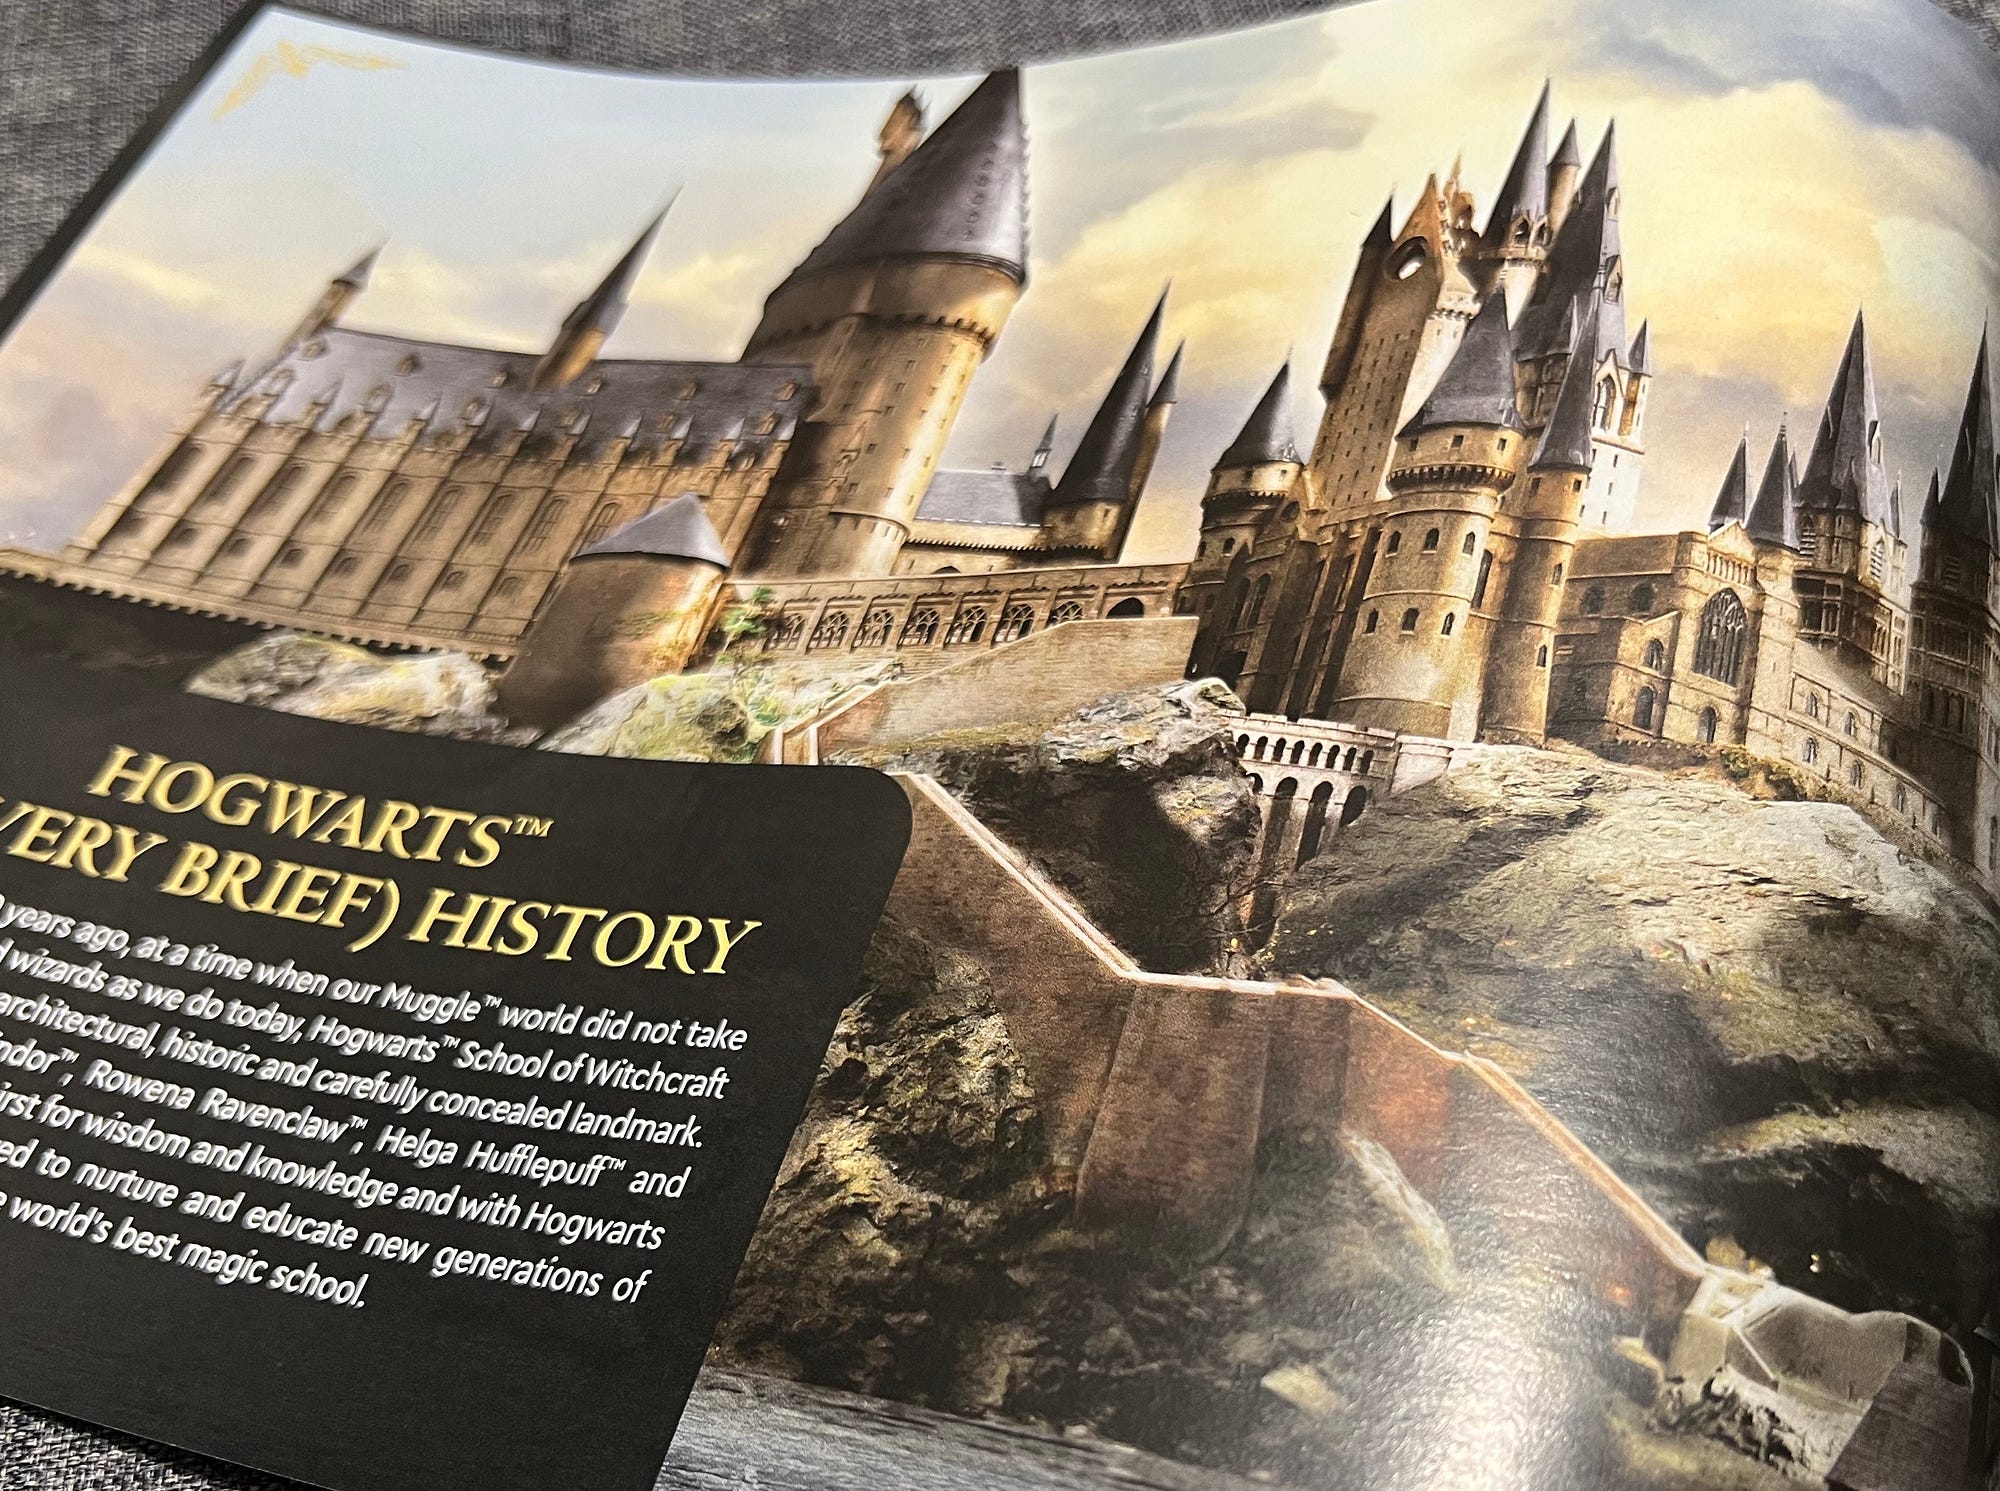 Hogwarts™ Castle 71043 | Harry Potter™ | Buy online at the Official LEGO®  Shop PT